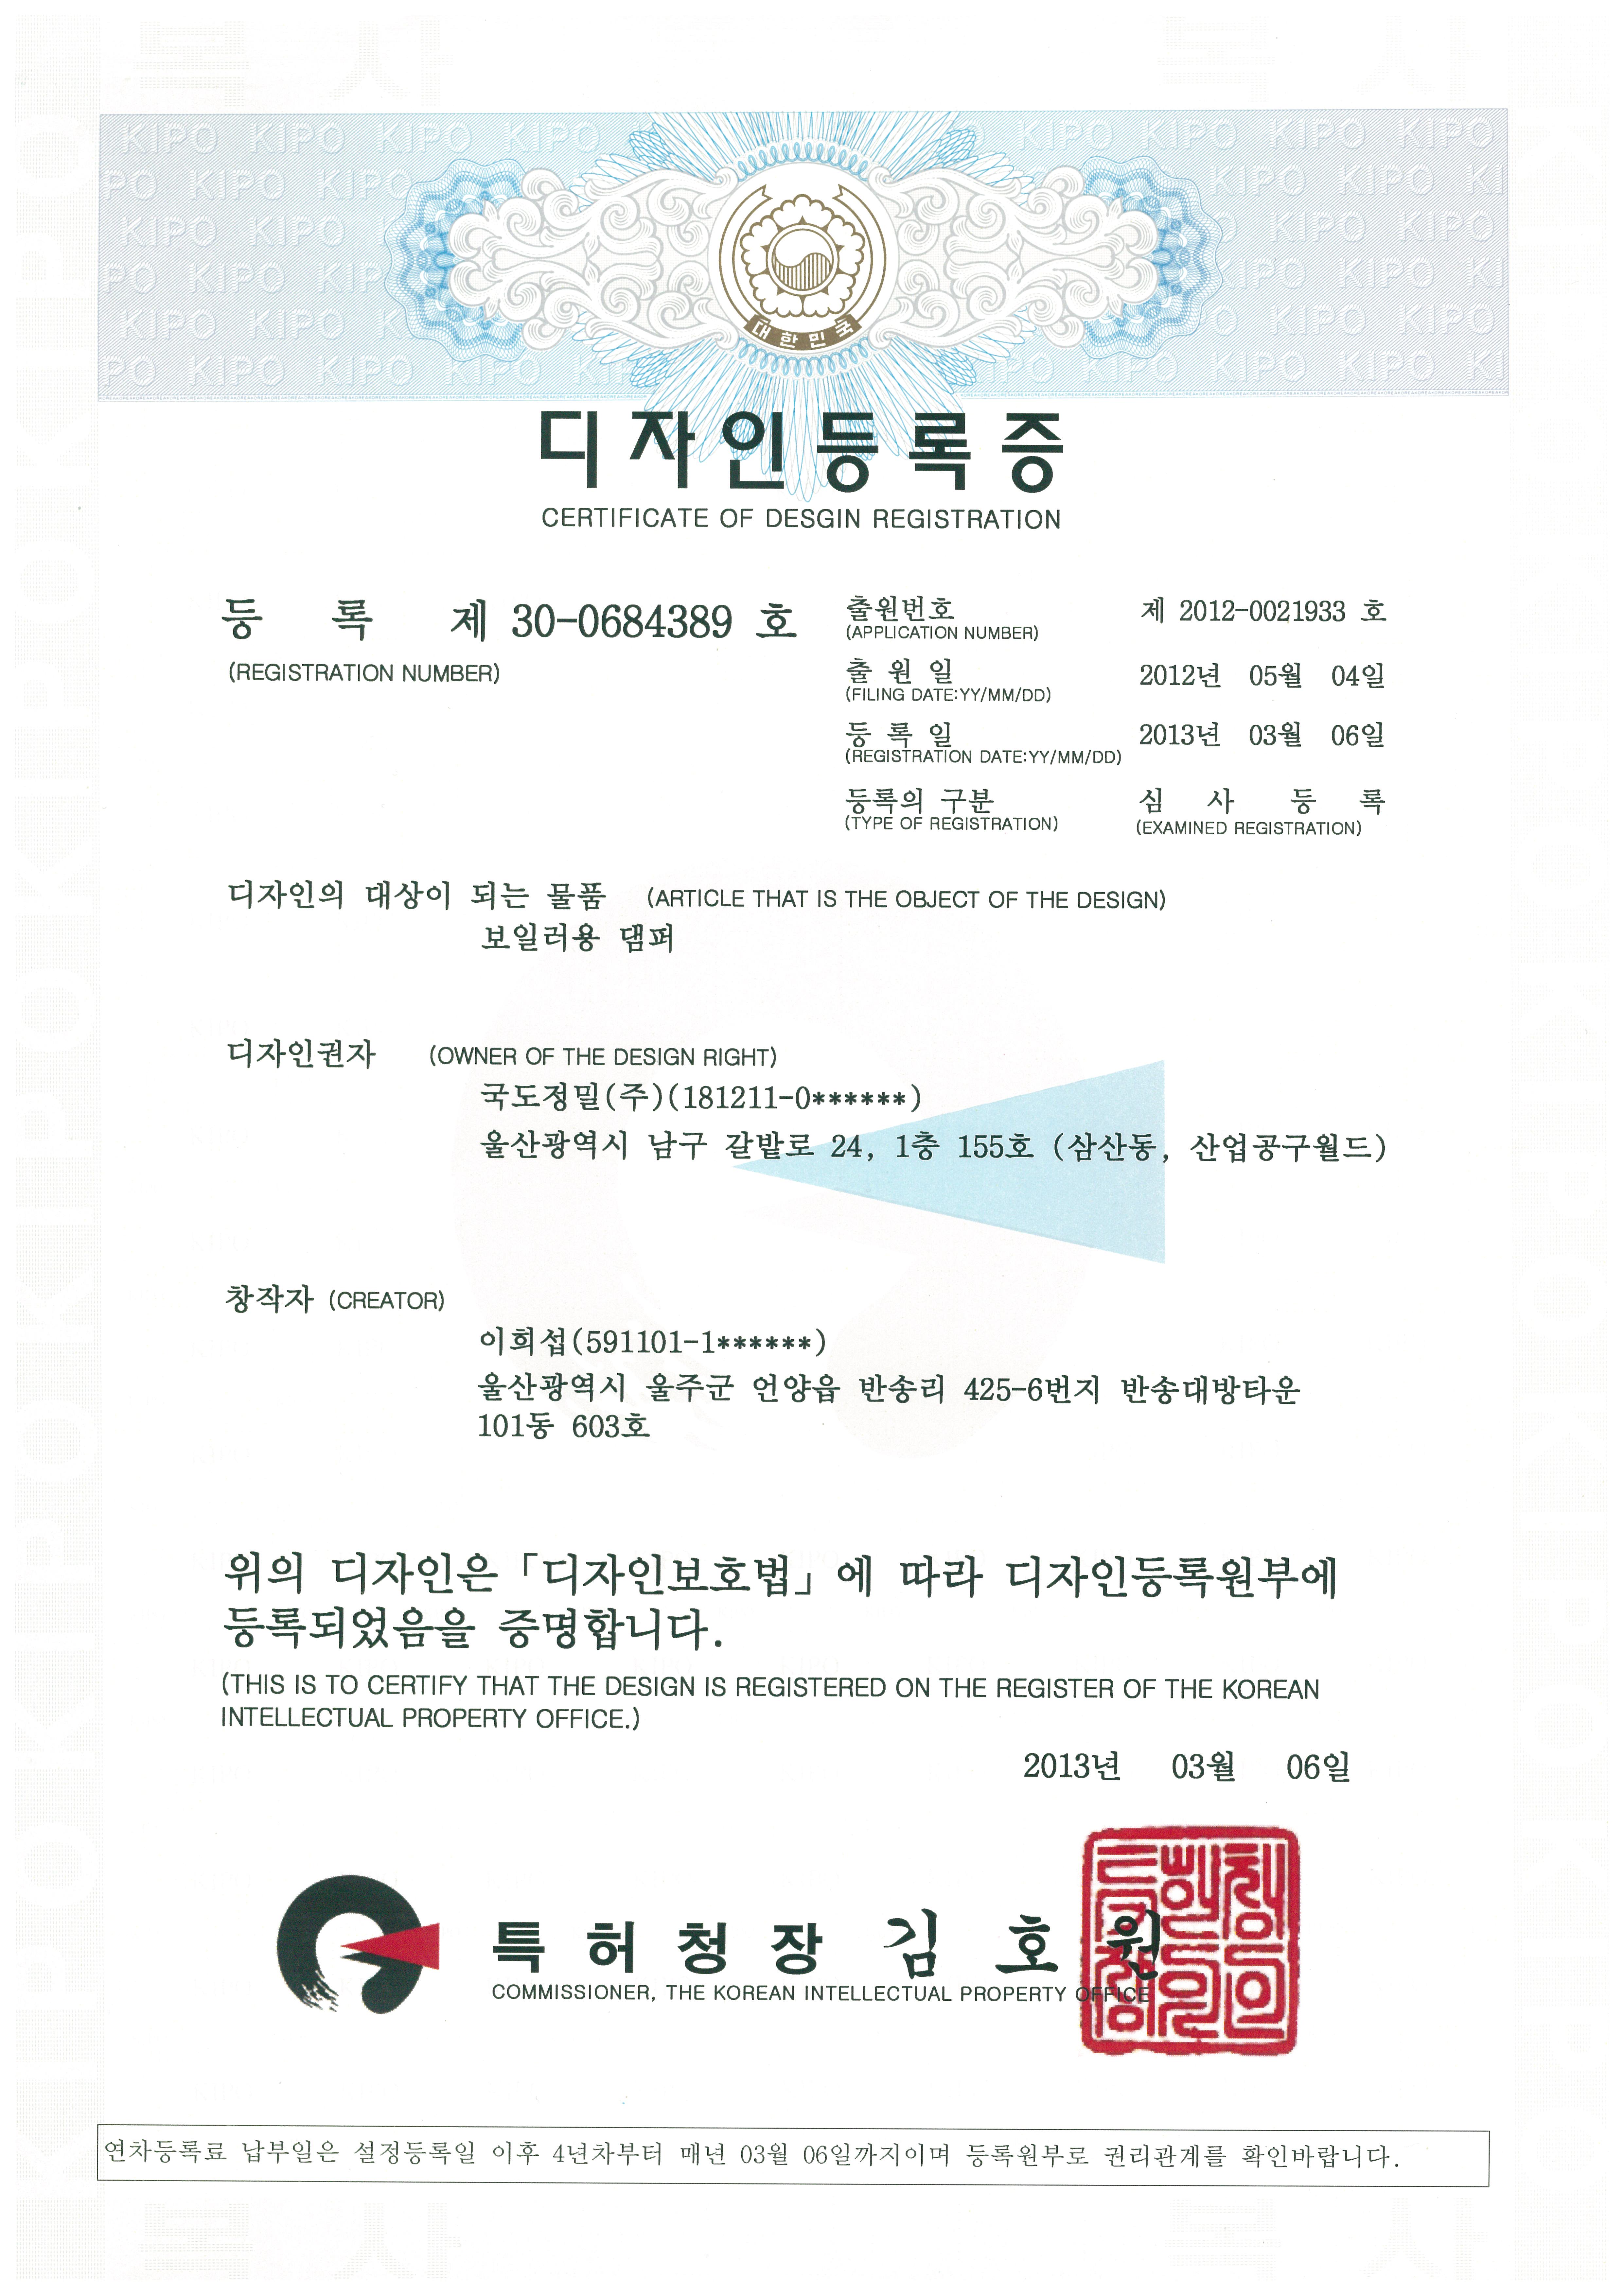 Certificate of Design Registration - Boiler Damper